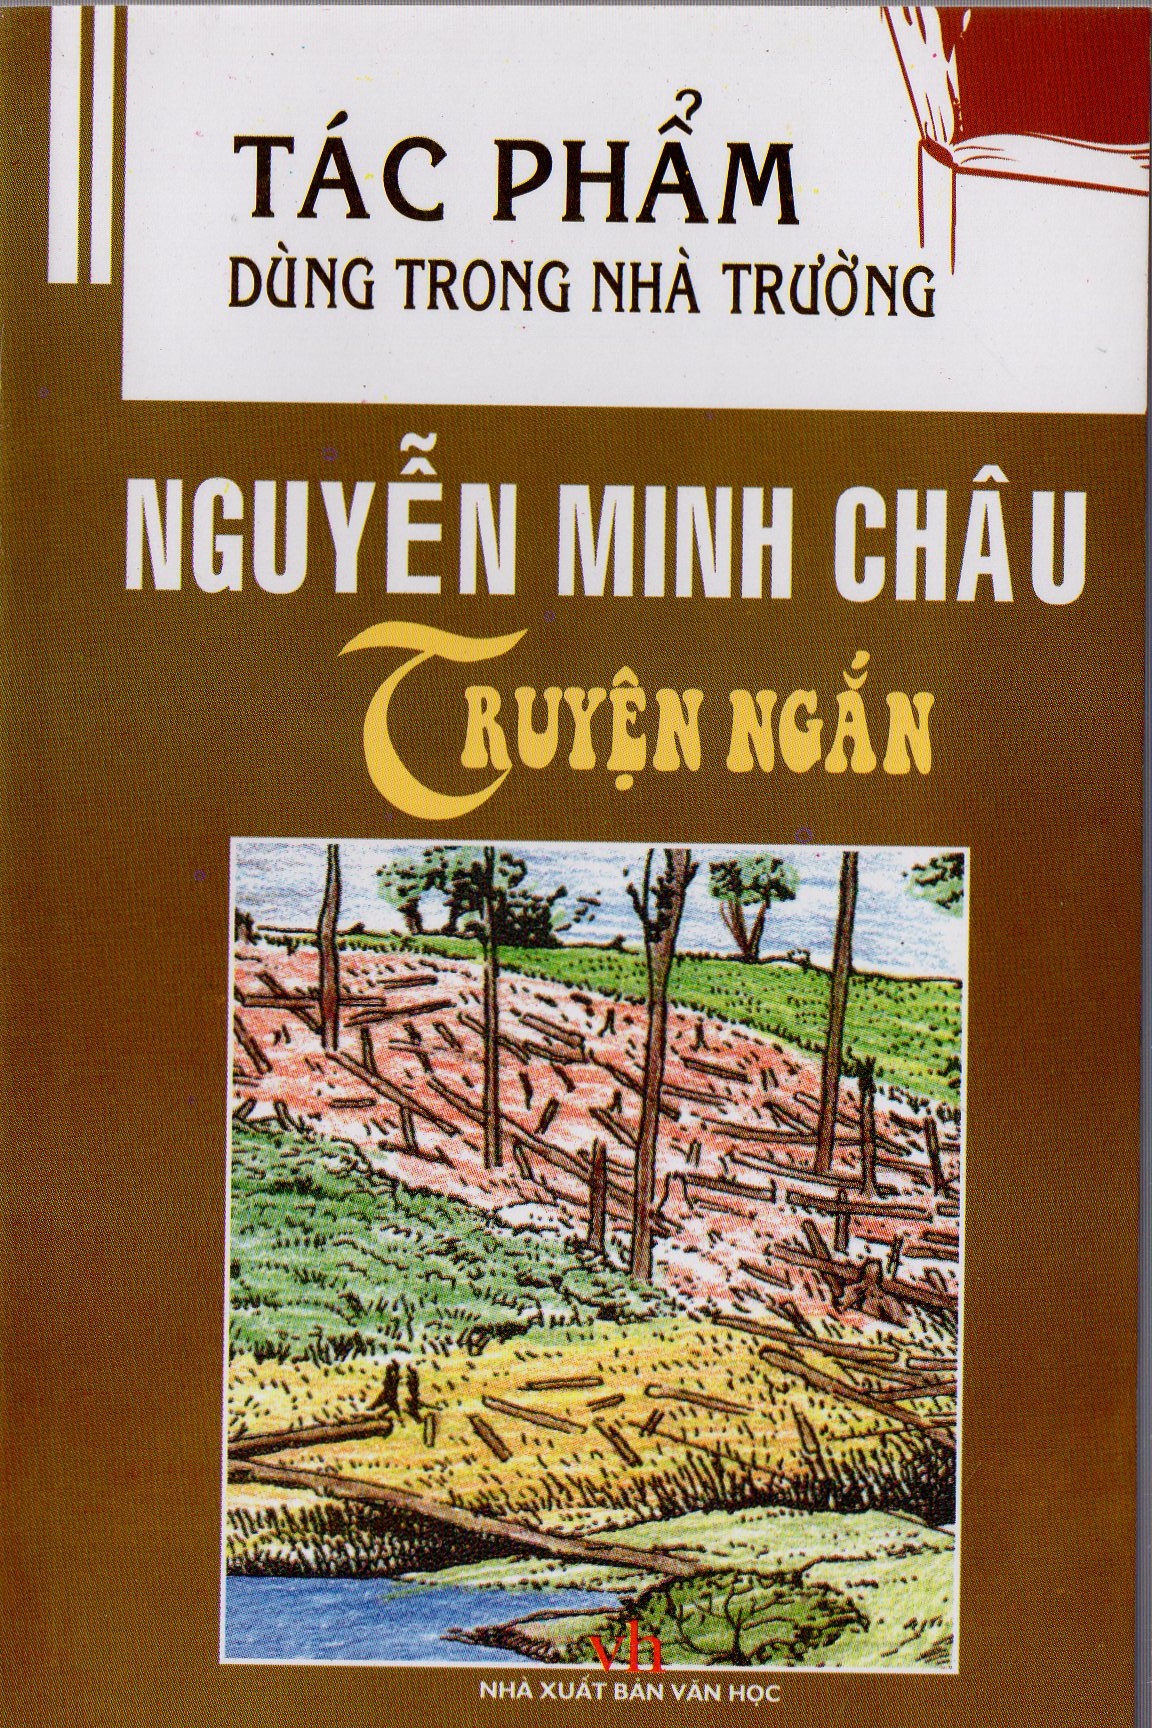 Tác phẩm dùng trong nhà trường - Truyện ngắn Nguyễn Minh Châu (Sách bỏ túi)